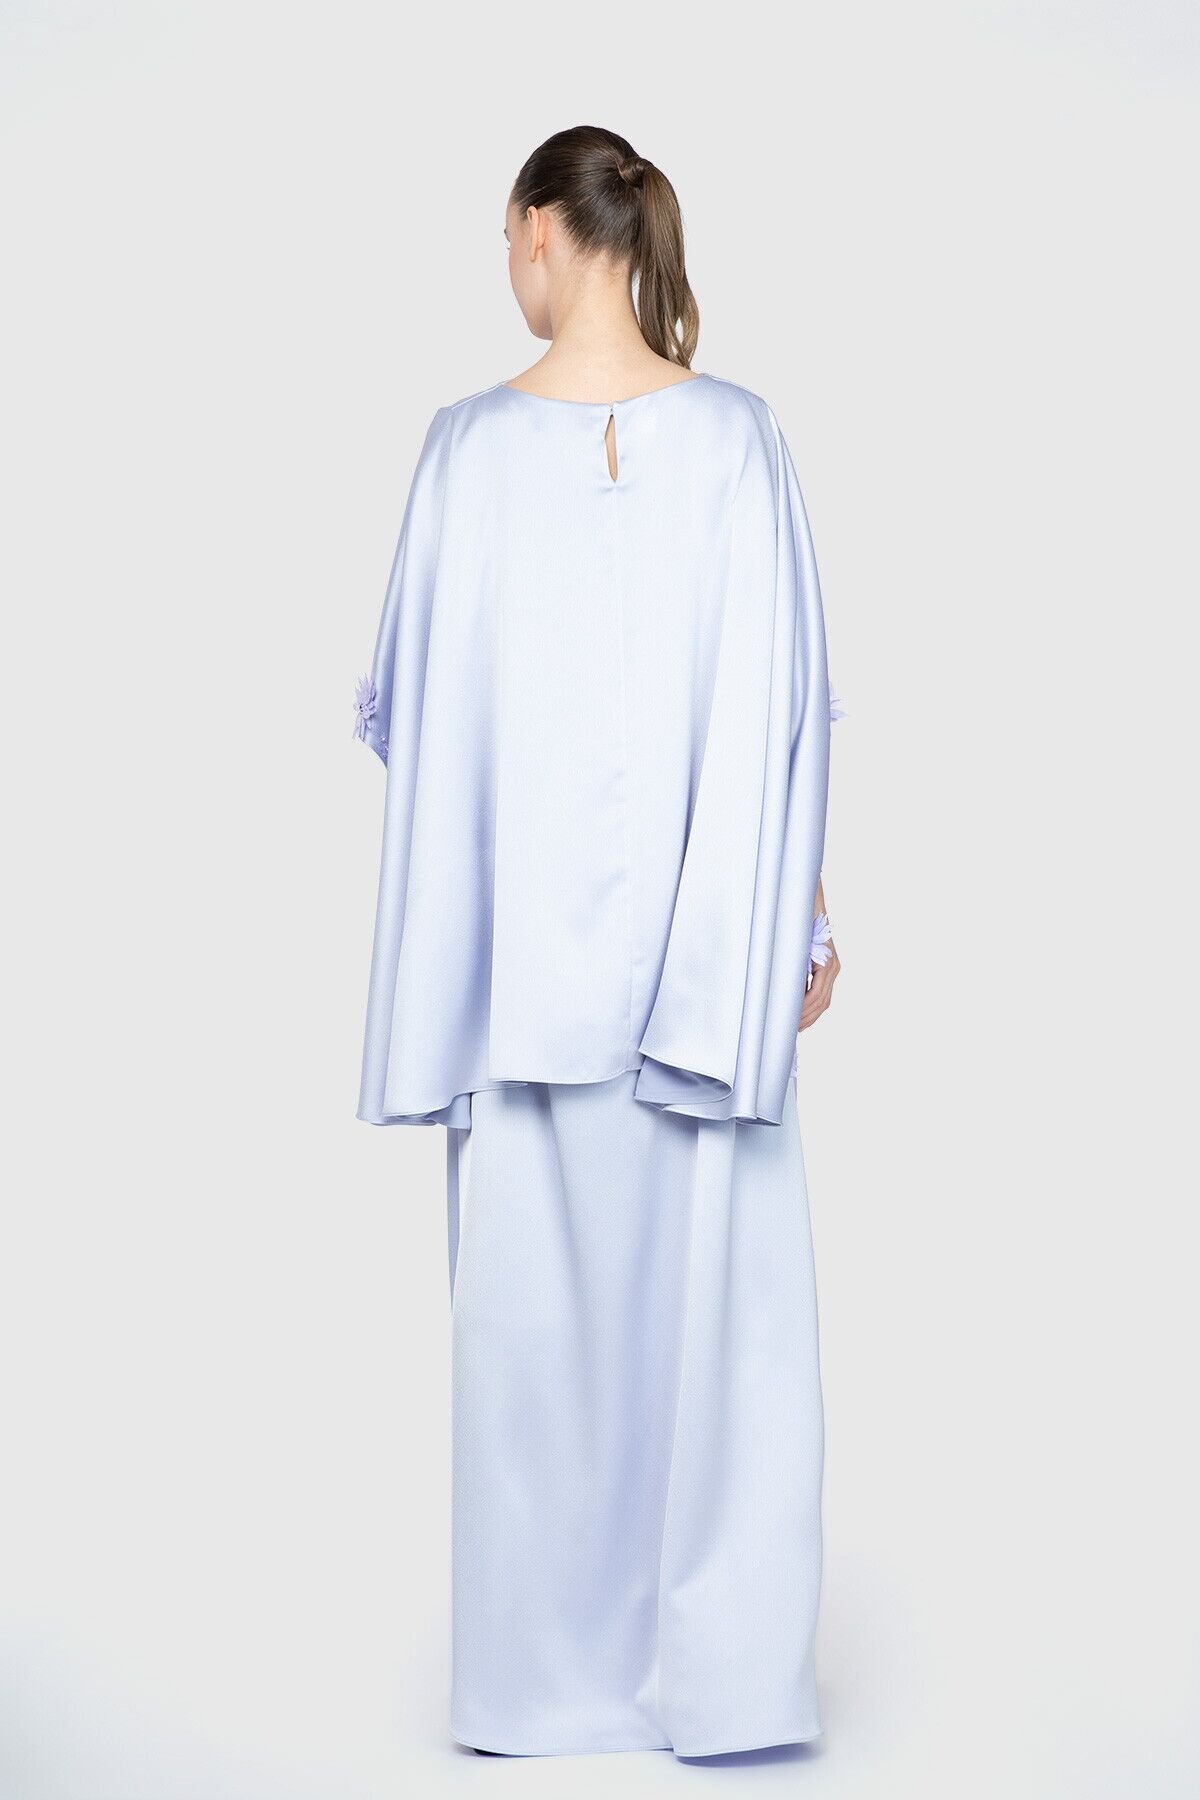 Nihan Peker İşleme Detaylı Uzun Abiye Tasarım Elbise